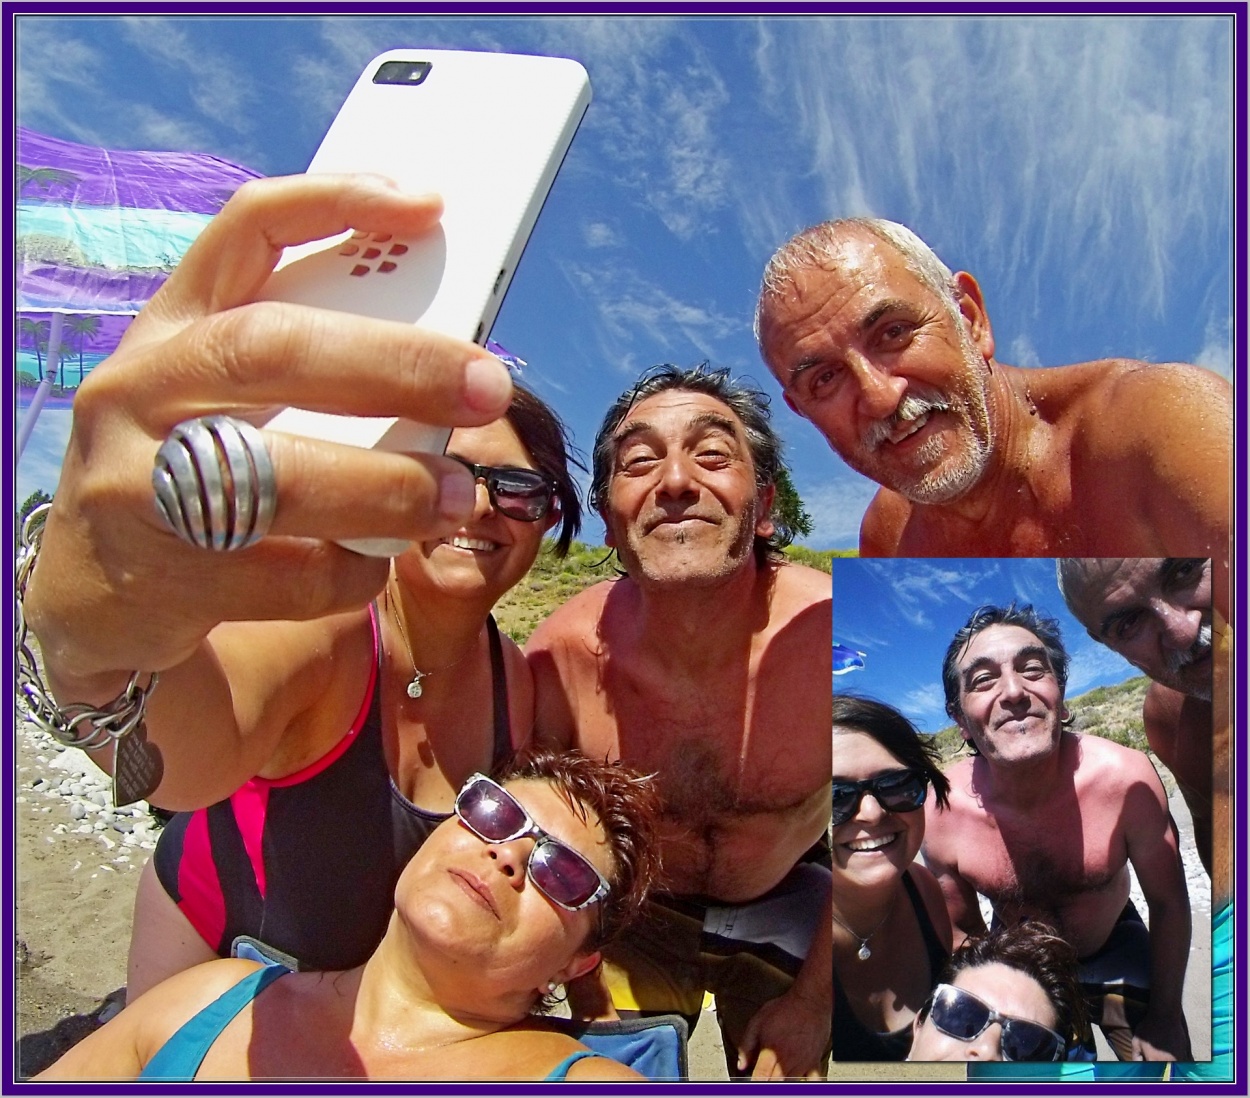 "Selfie de la Selfie" de Gustavo Luben Ivanoff